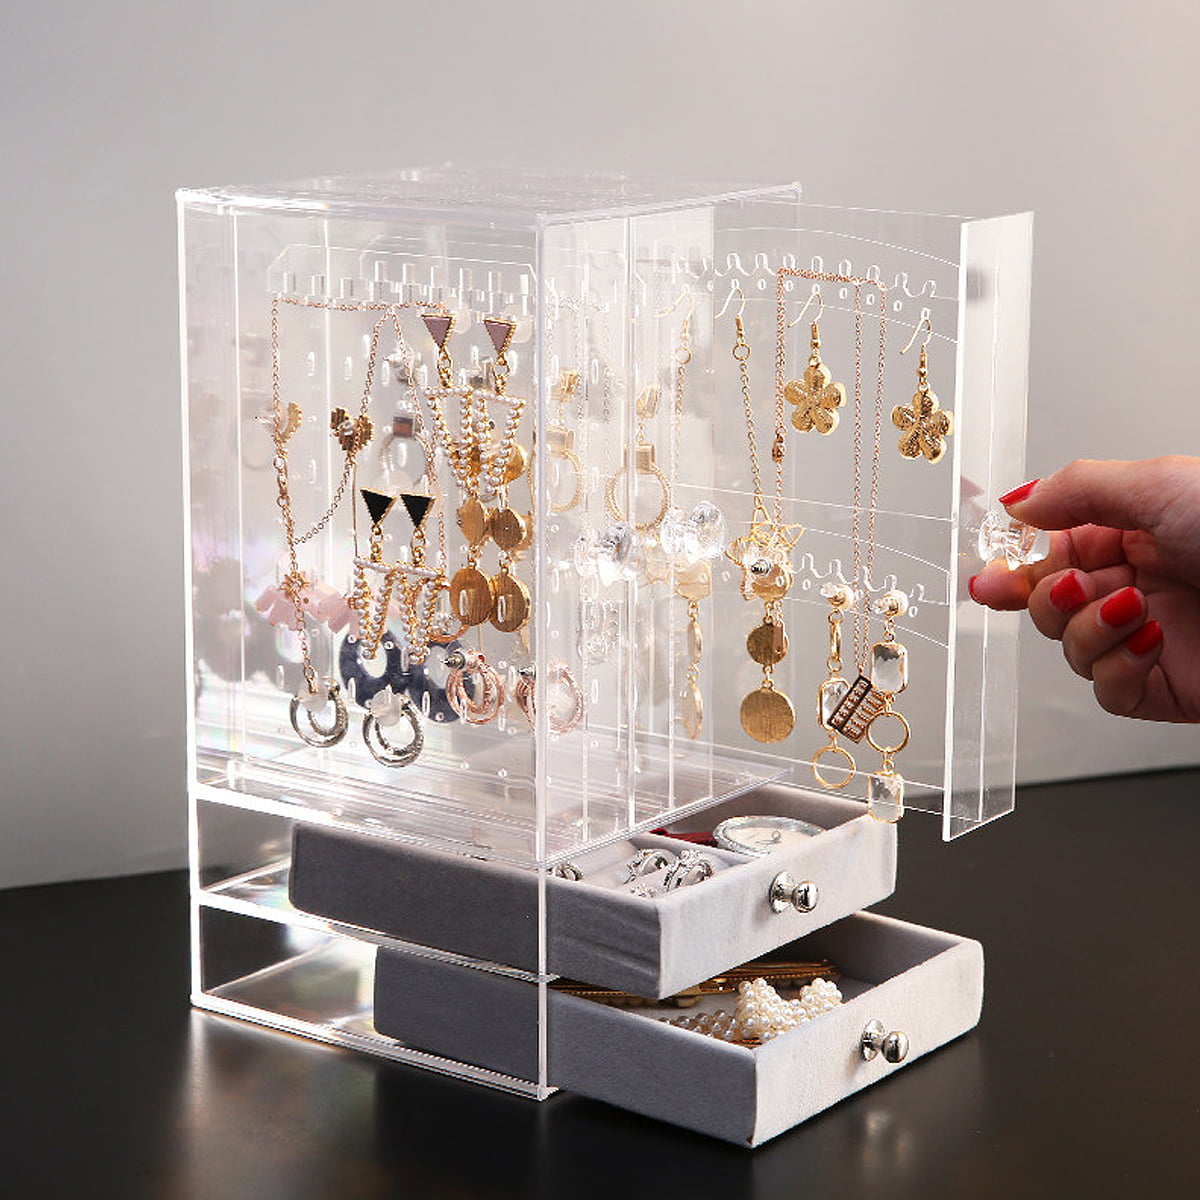 Earring necklace ring hanger holder rack & velvet drawers jewelry organizer box 